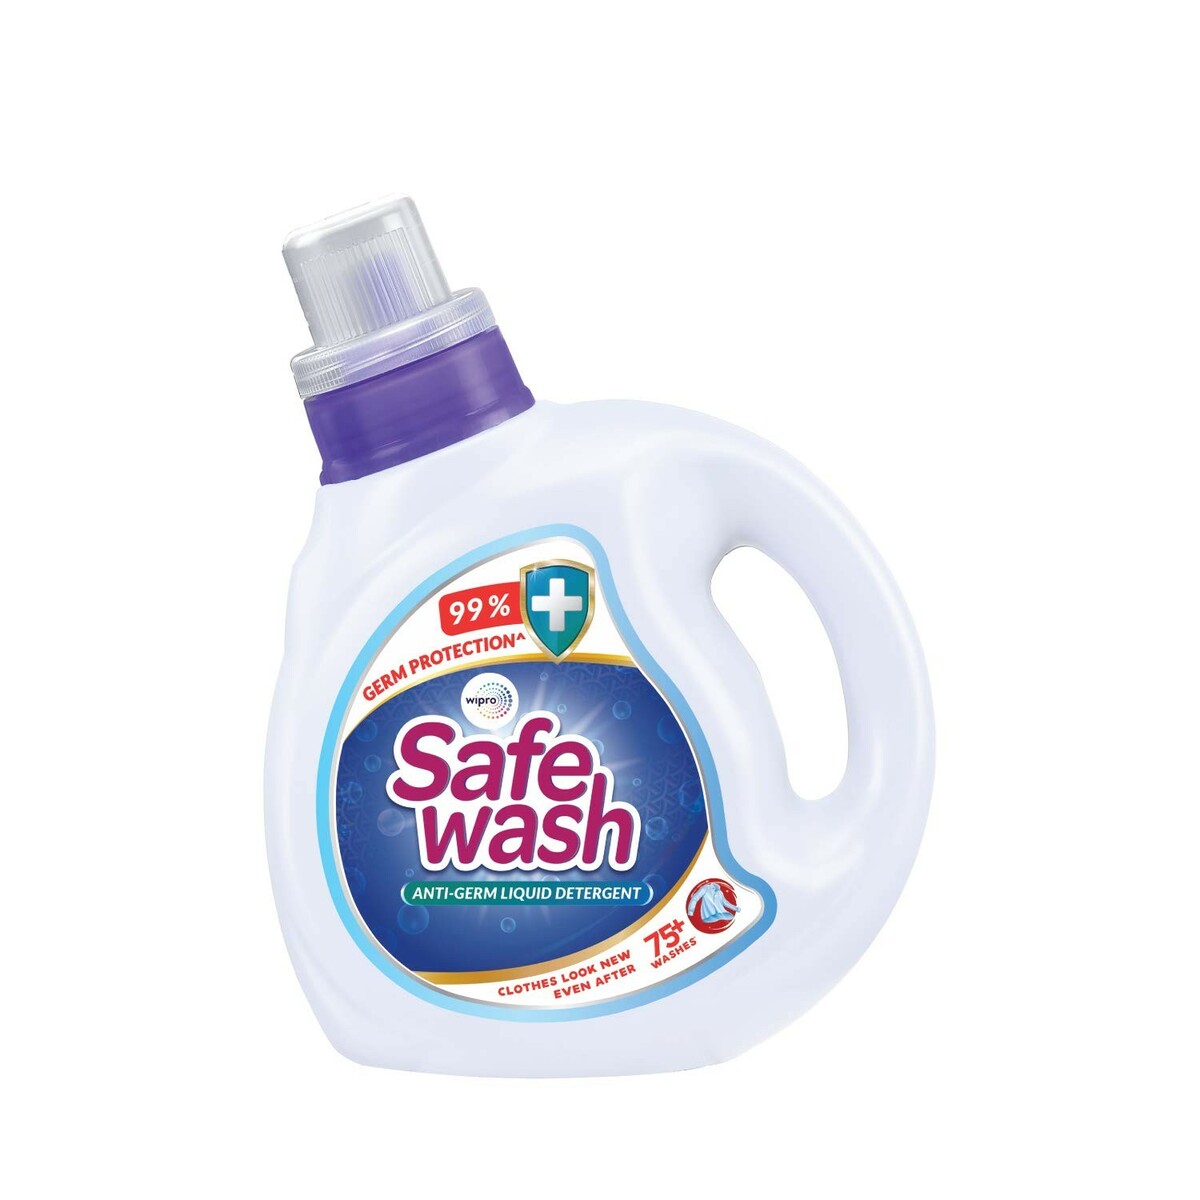 Softouch_Anti_Germ_Liquid_Detergent_1kg